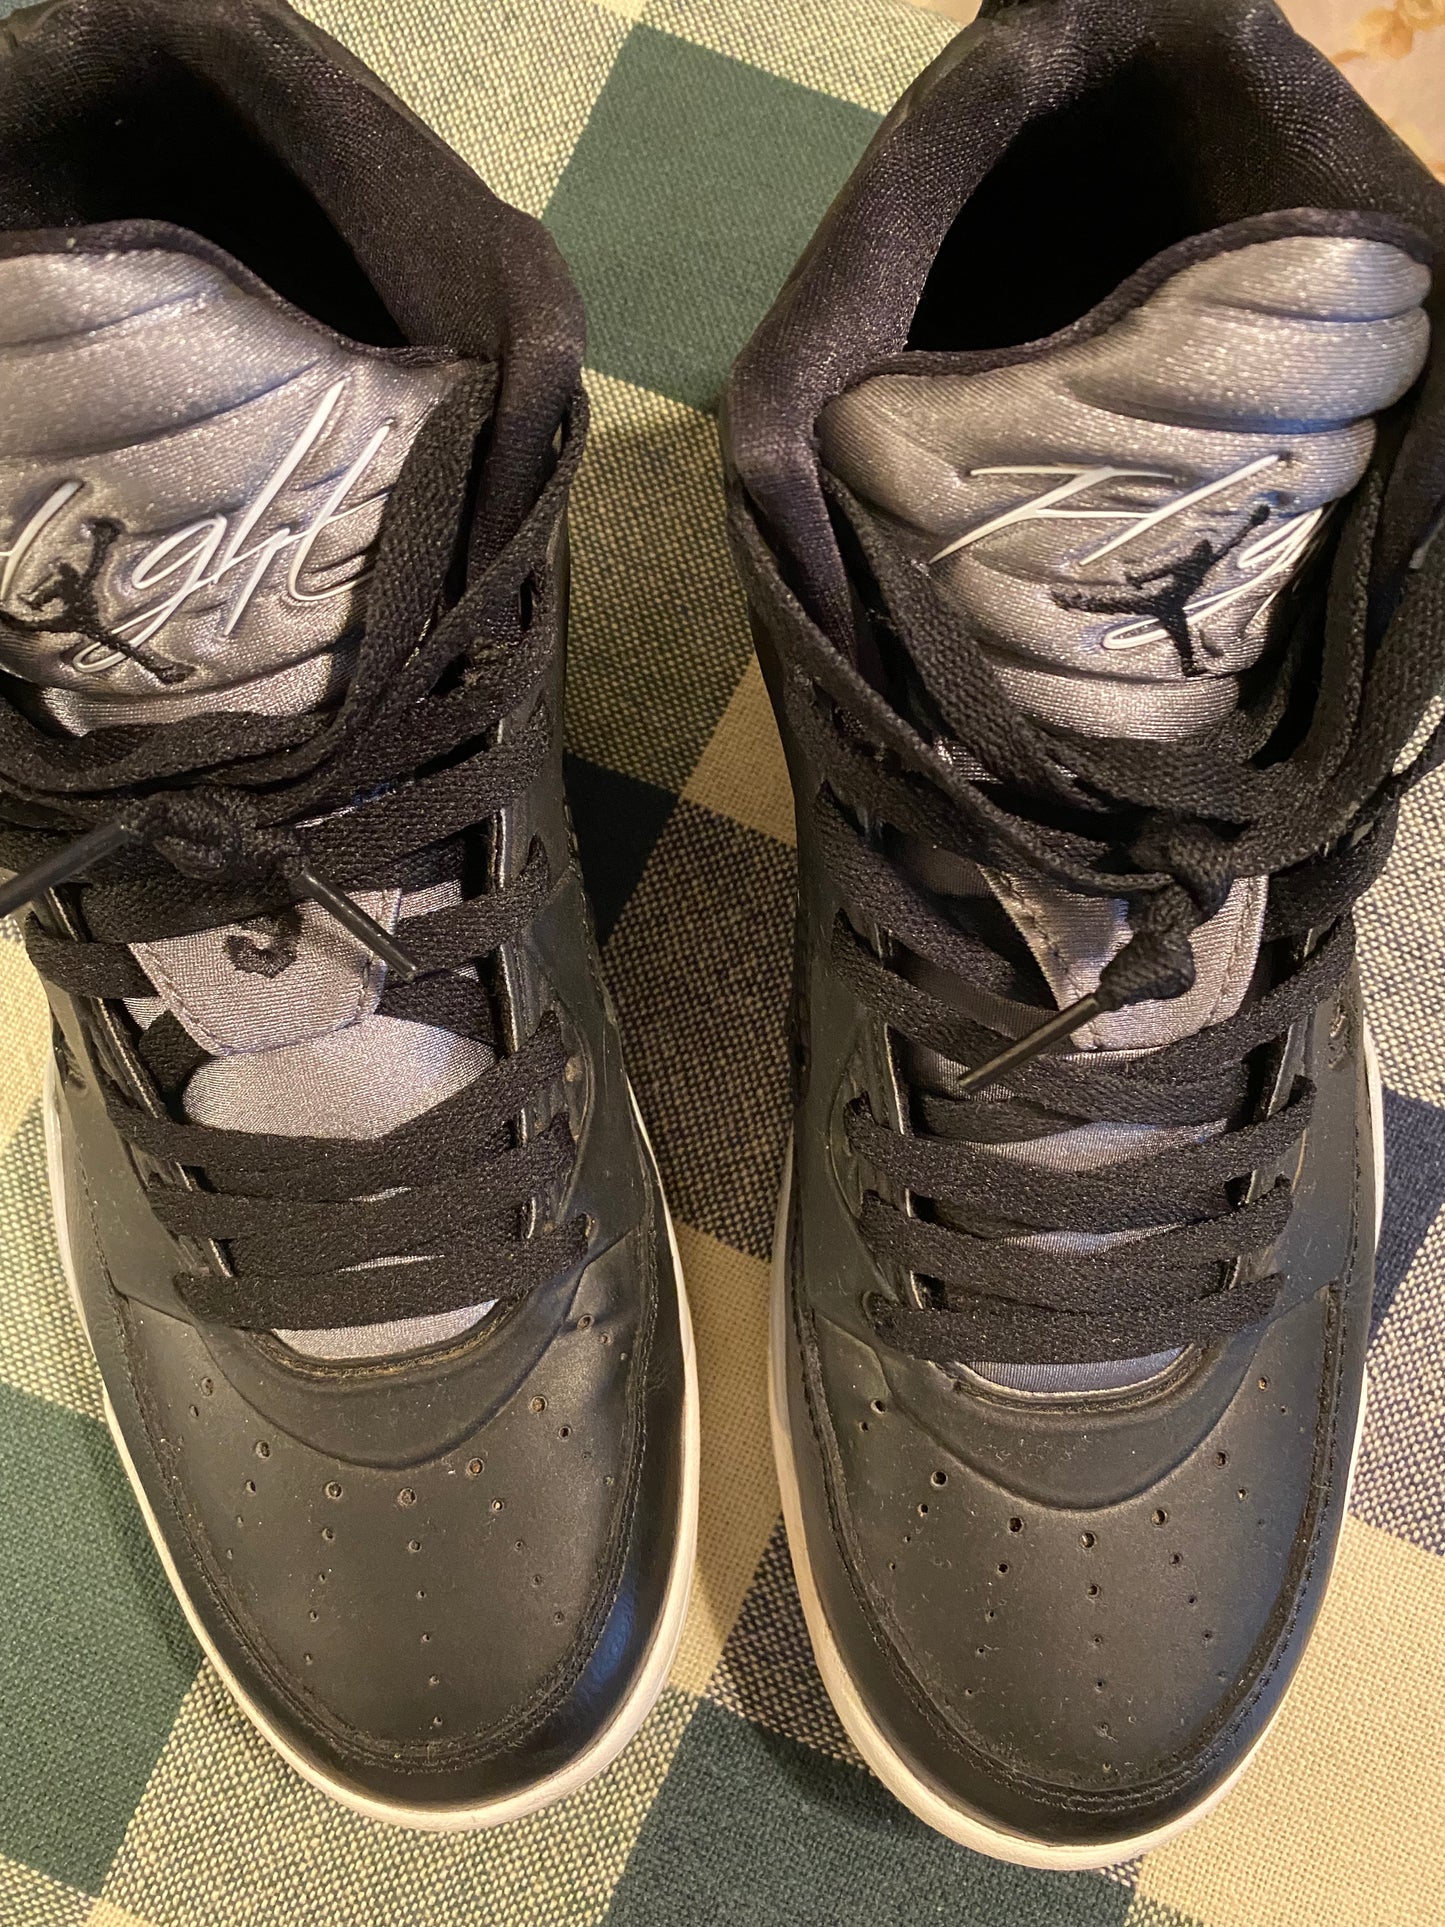 Air Jordan-"Flight Air Jordan" Shoes (sz. 9.5 men) Gray & White